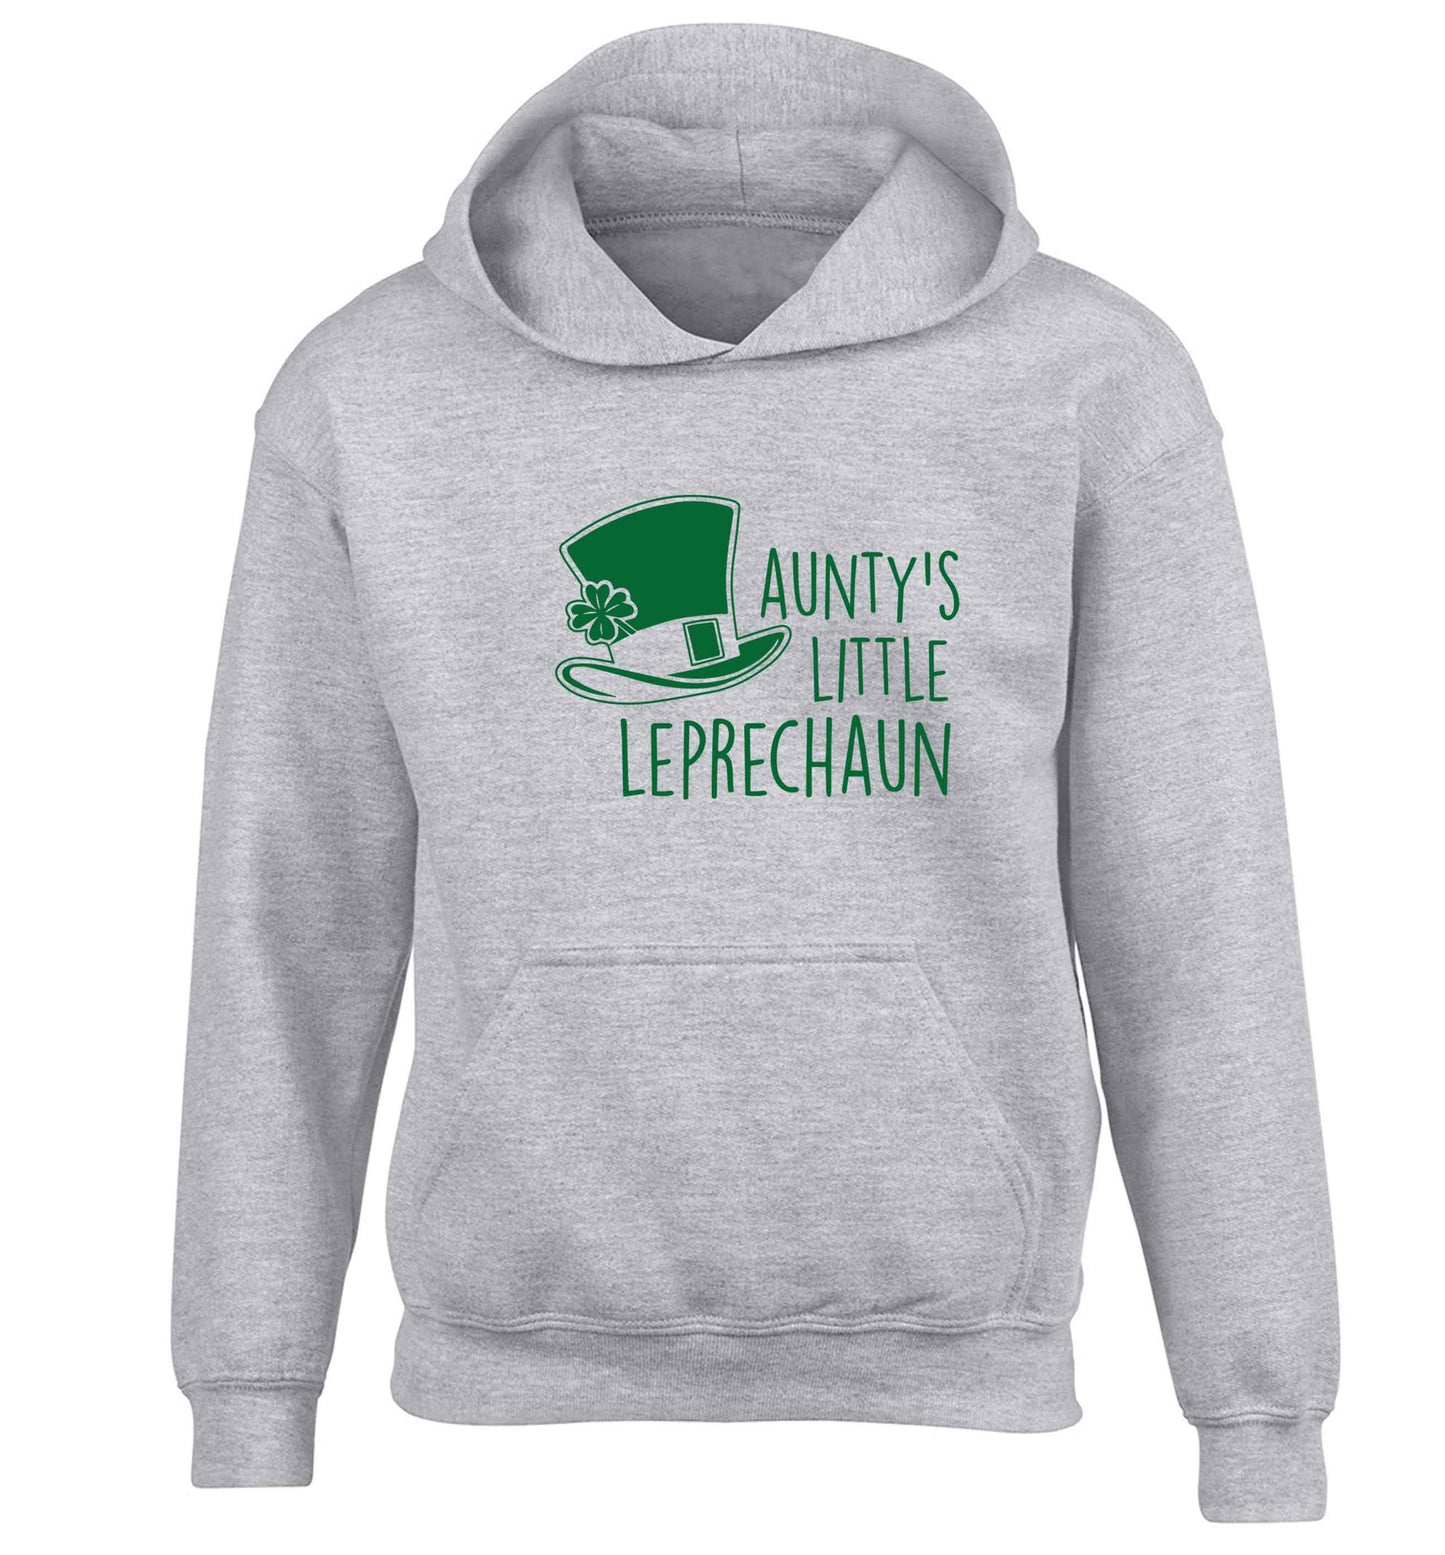 Aunty's little leprechaun children's grey hoodie 12-13 Years